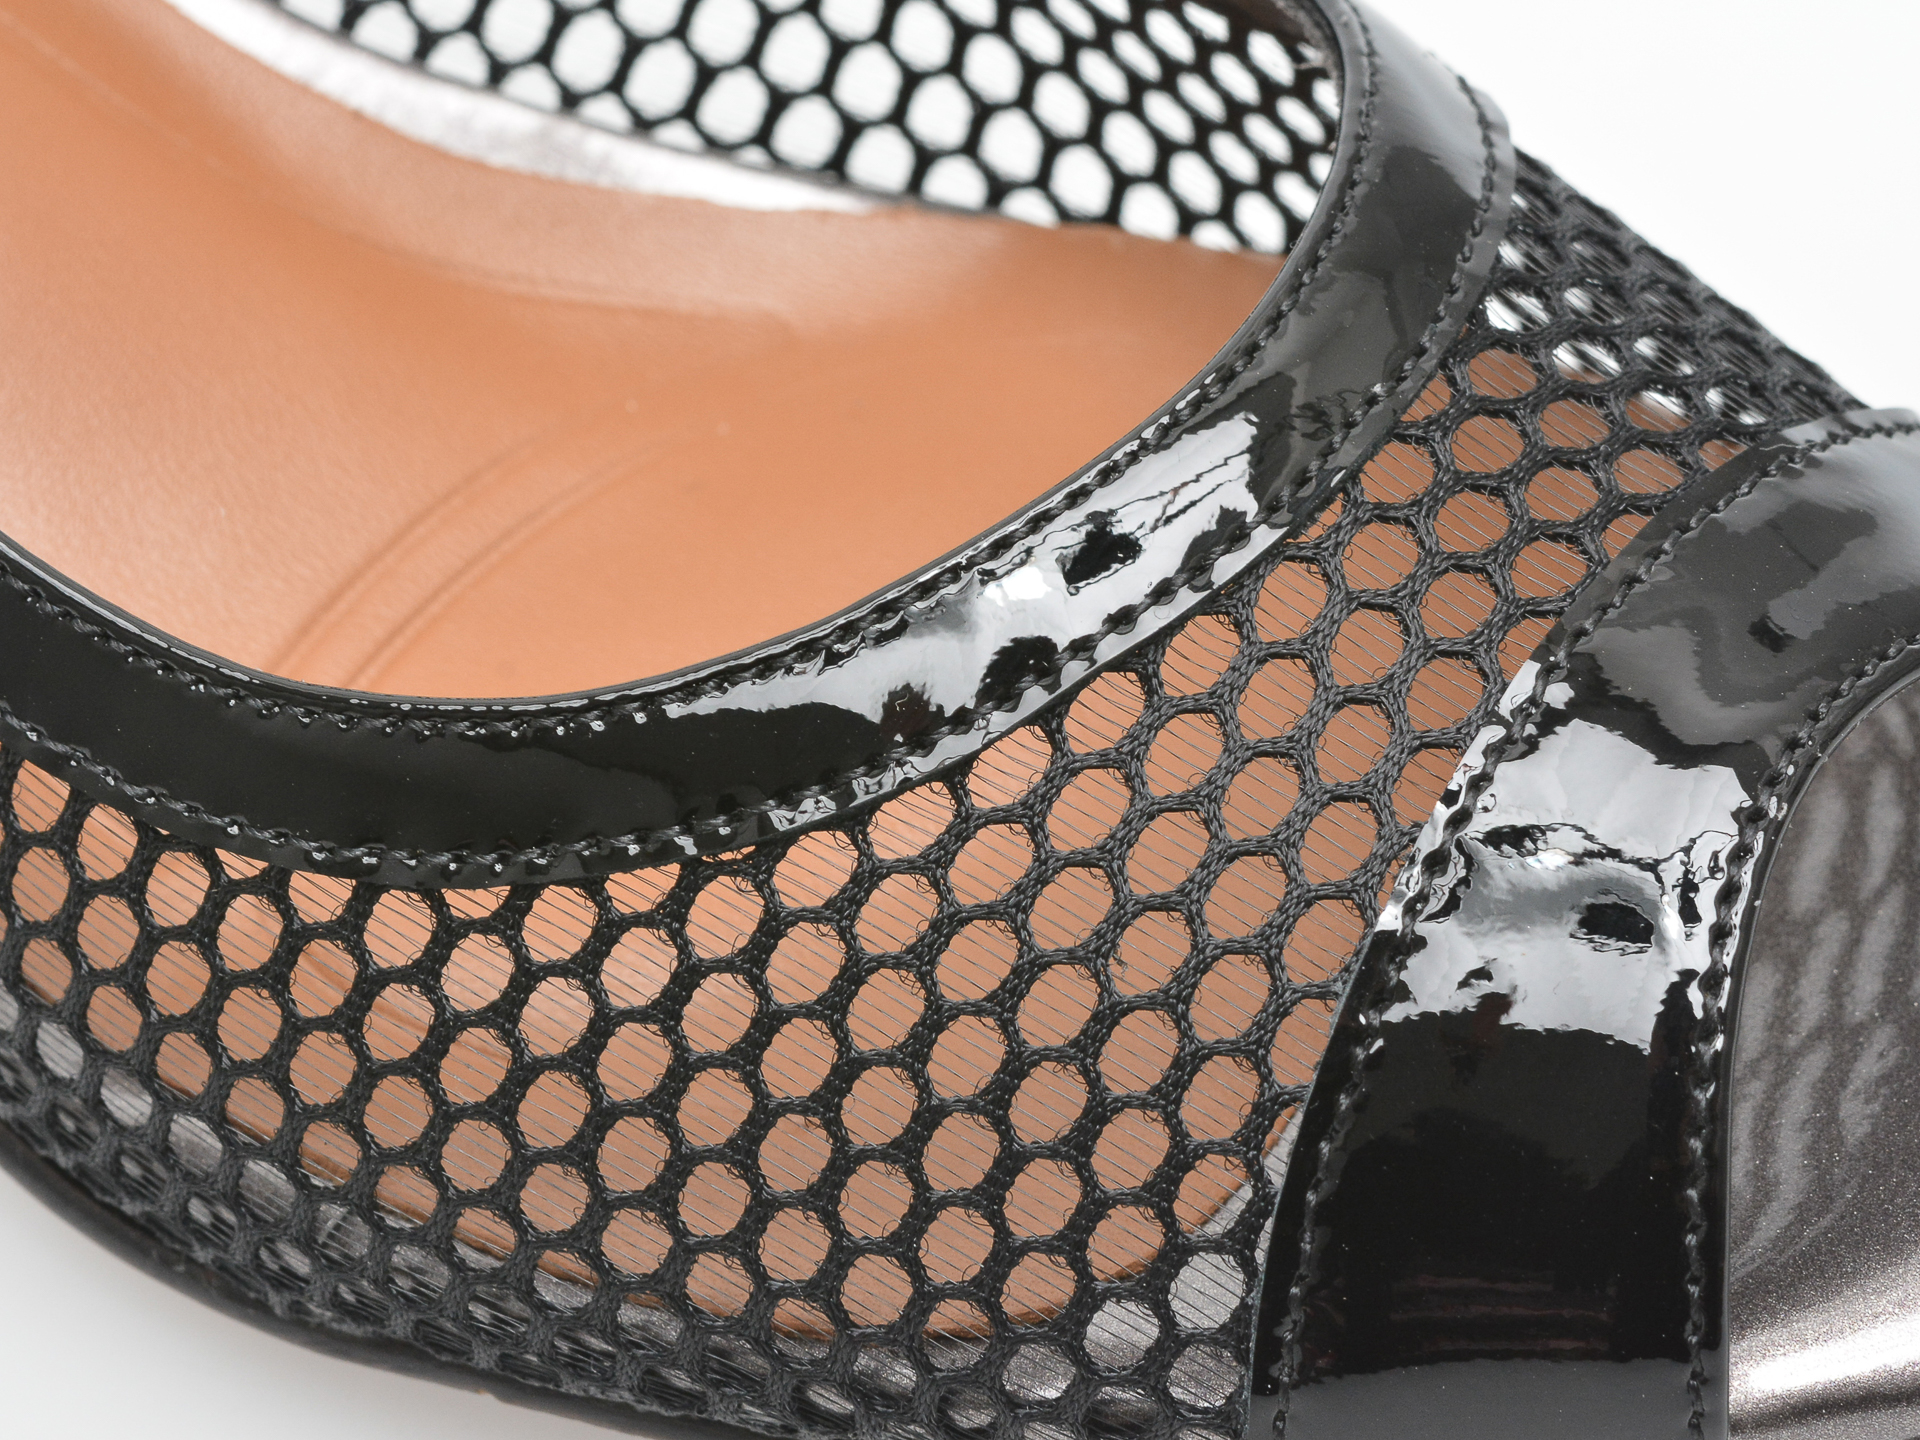 Poze Sandale EPICA negre, JI20010, din material textil si piele naturala lacuita tezyo.ro